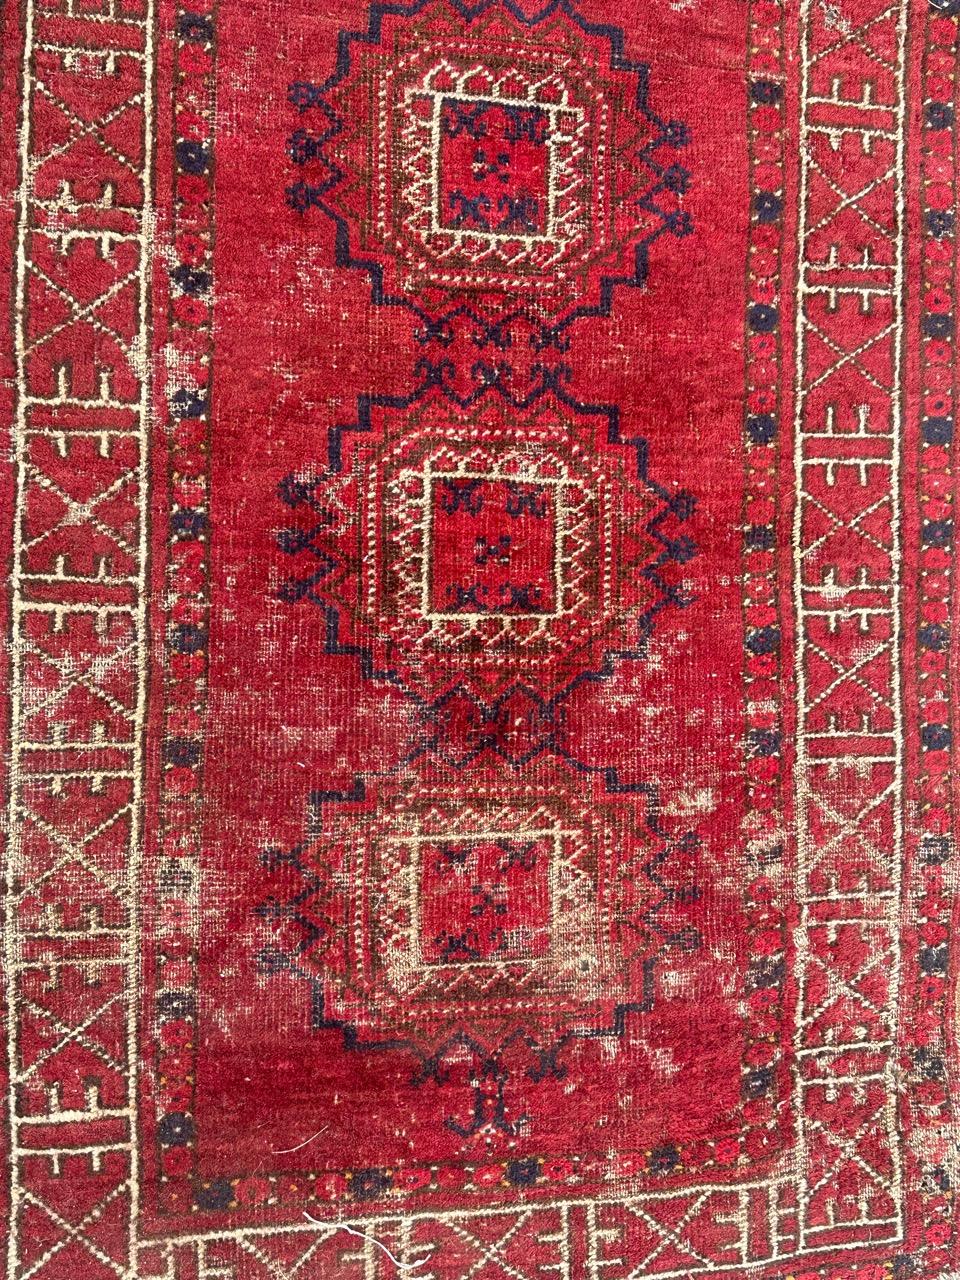 Magnifique tapis antique tribal turkmène au design géométrique et aux belles couleurs naturelles avec du rouge, du marron, du bleu et du blanc, nombreuses usures et petits dommages, entièrement noué à la main avec de la laine sur une base de